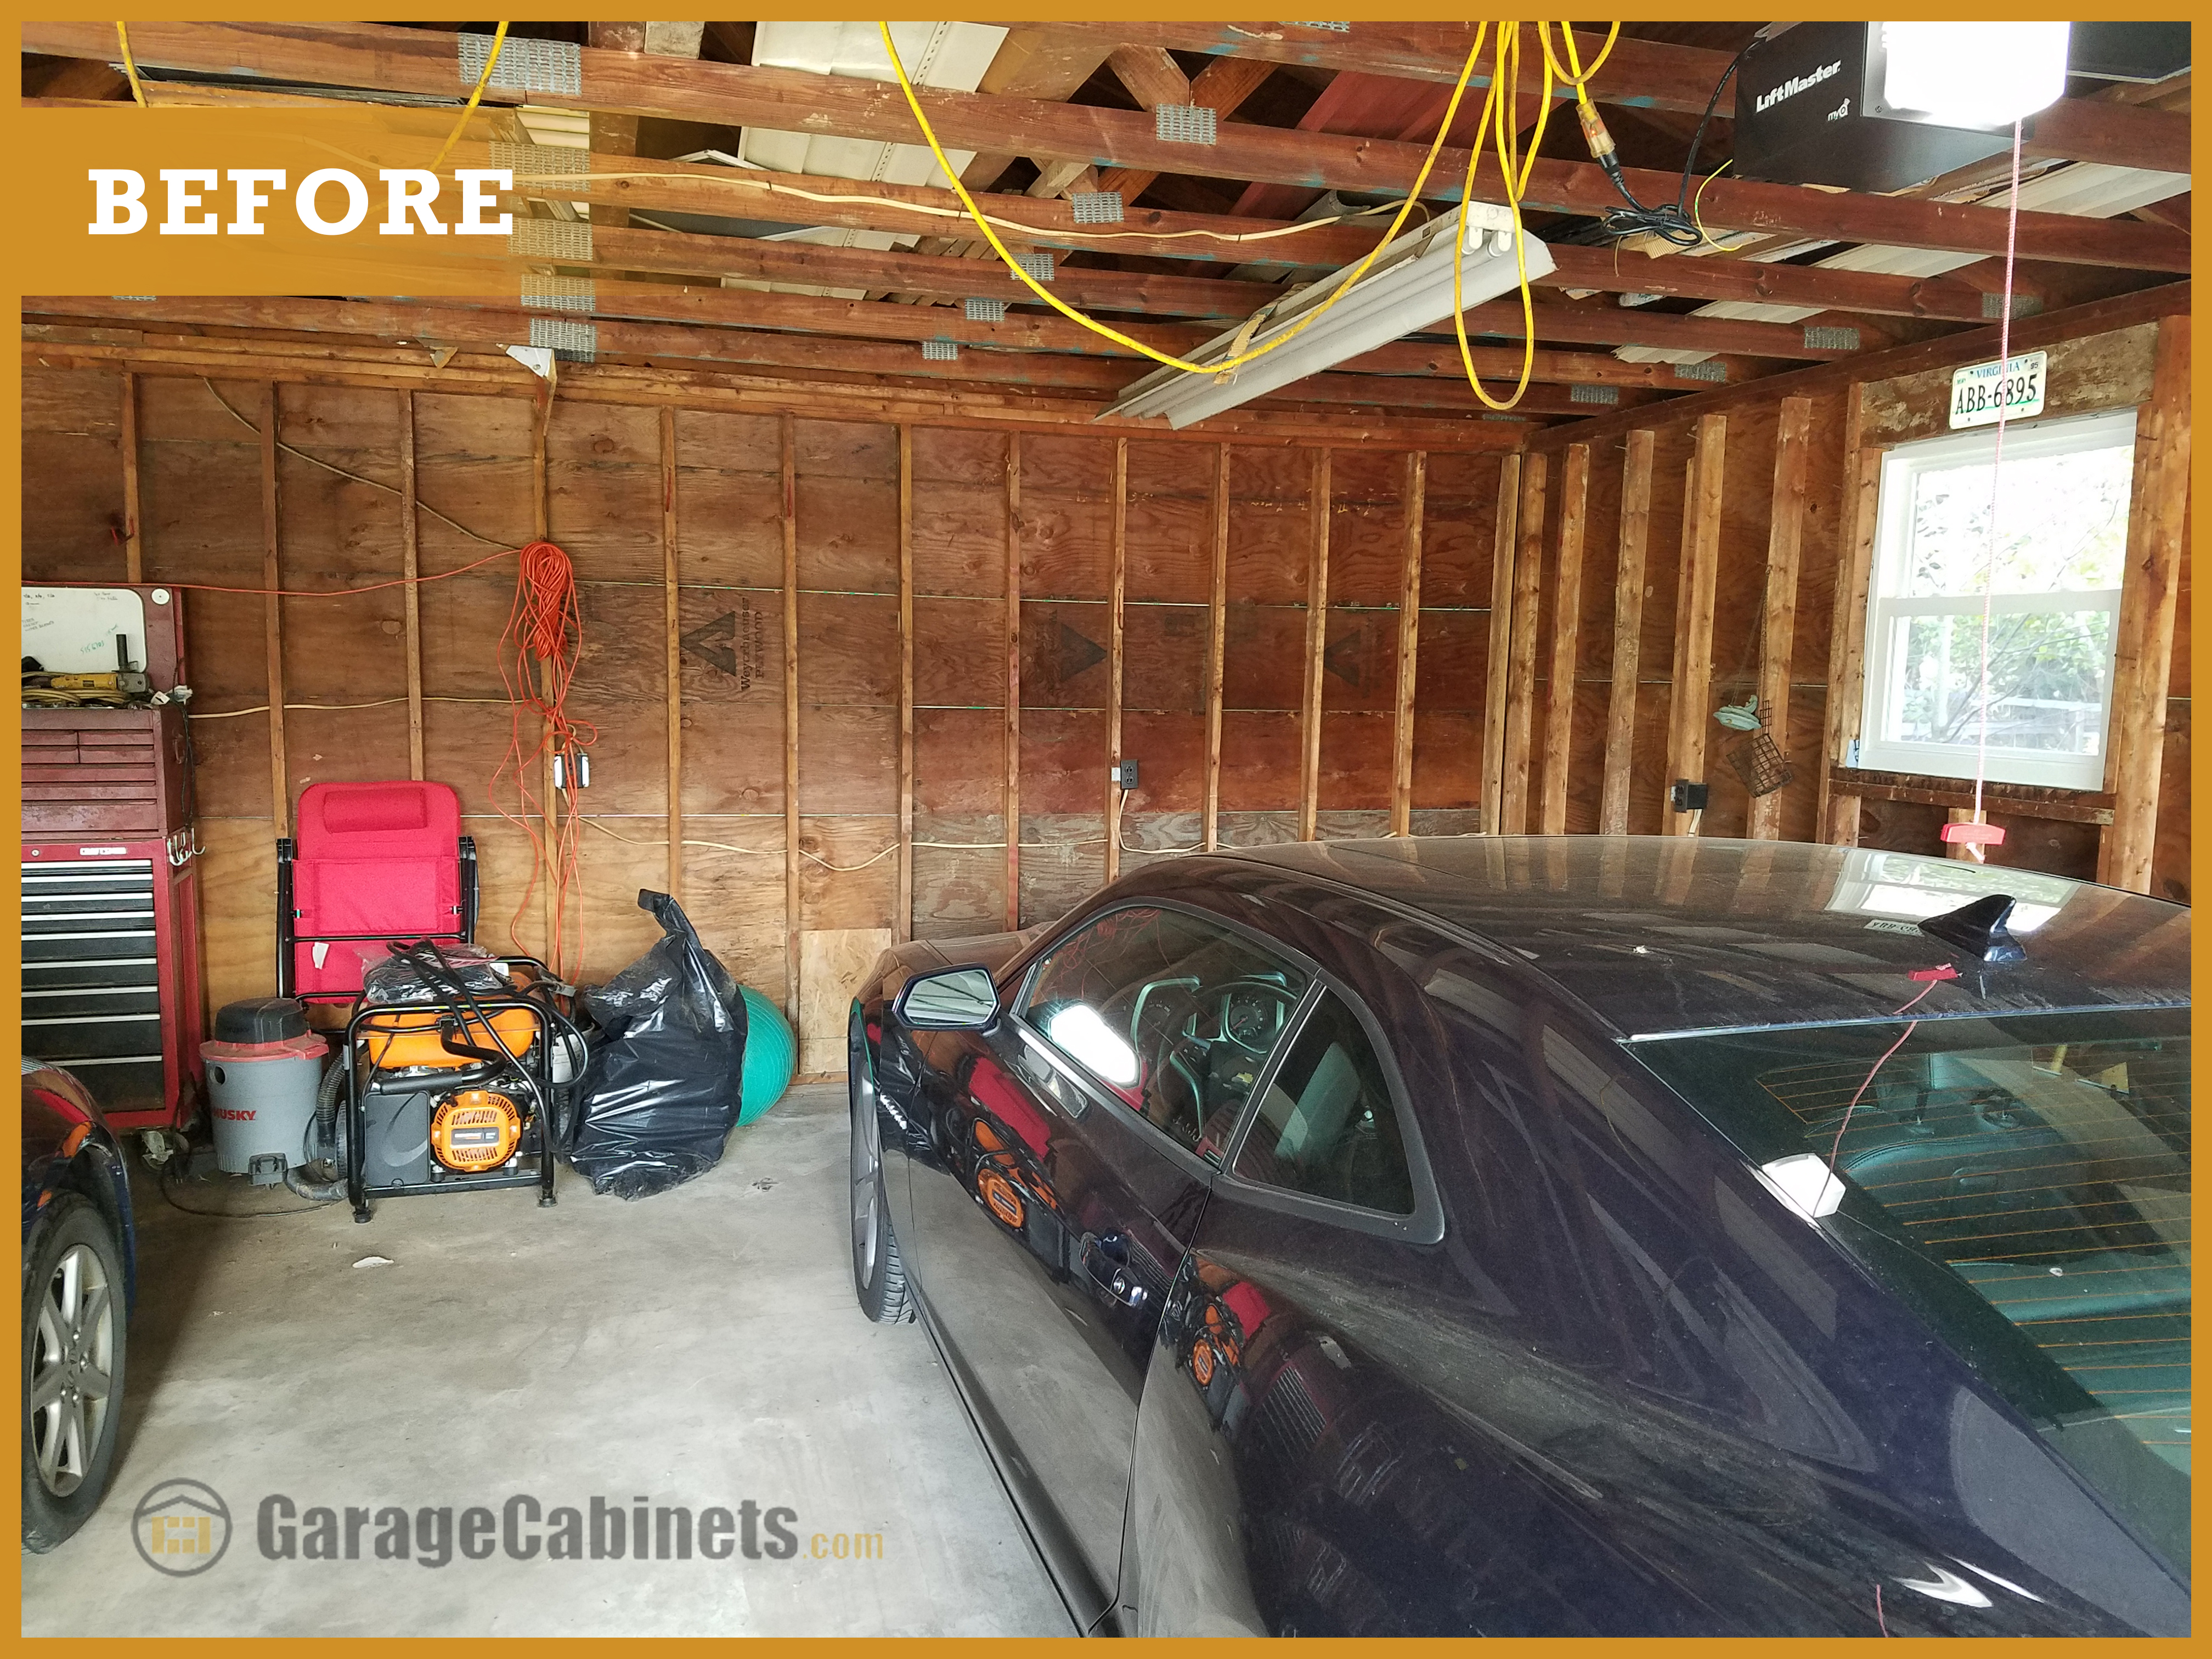 Garage storage needed badly in the Maryland garage.